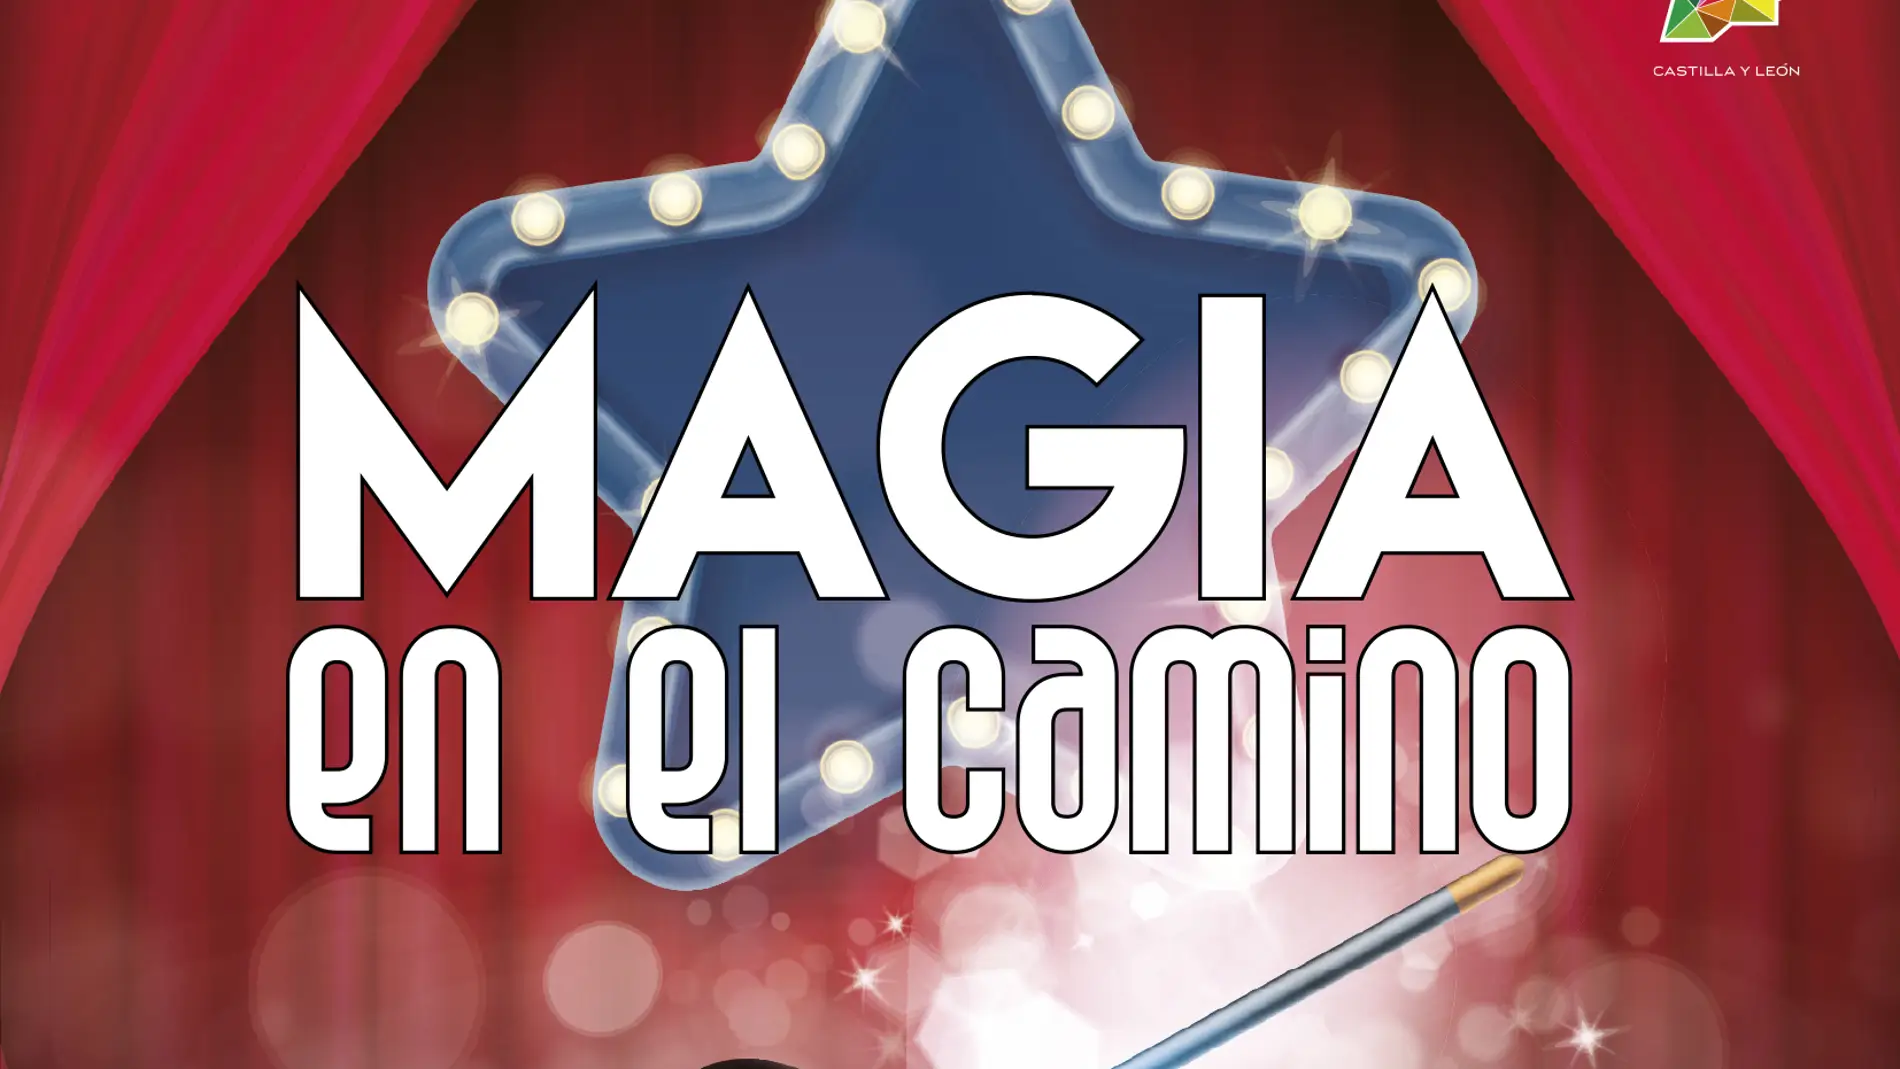  La Junta pone en marcha ‘Magia en el Camino’ con espectáculos de magia en 9  localidades en el entorno del Camino de Santiago